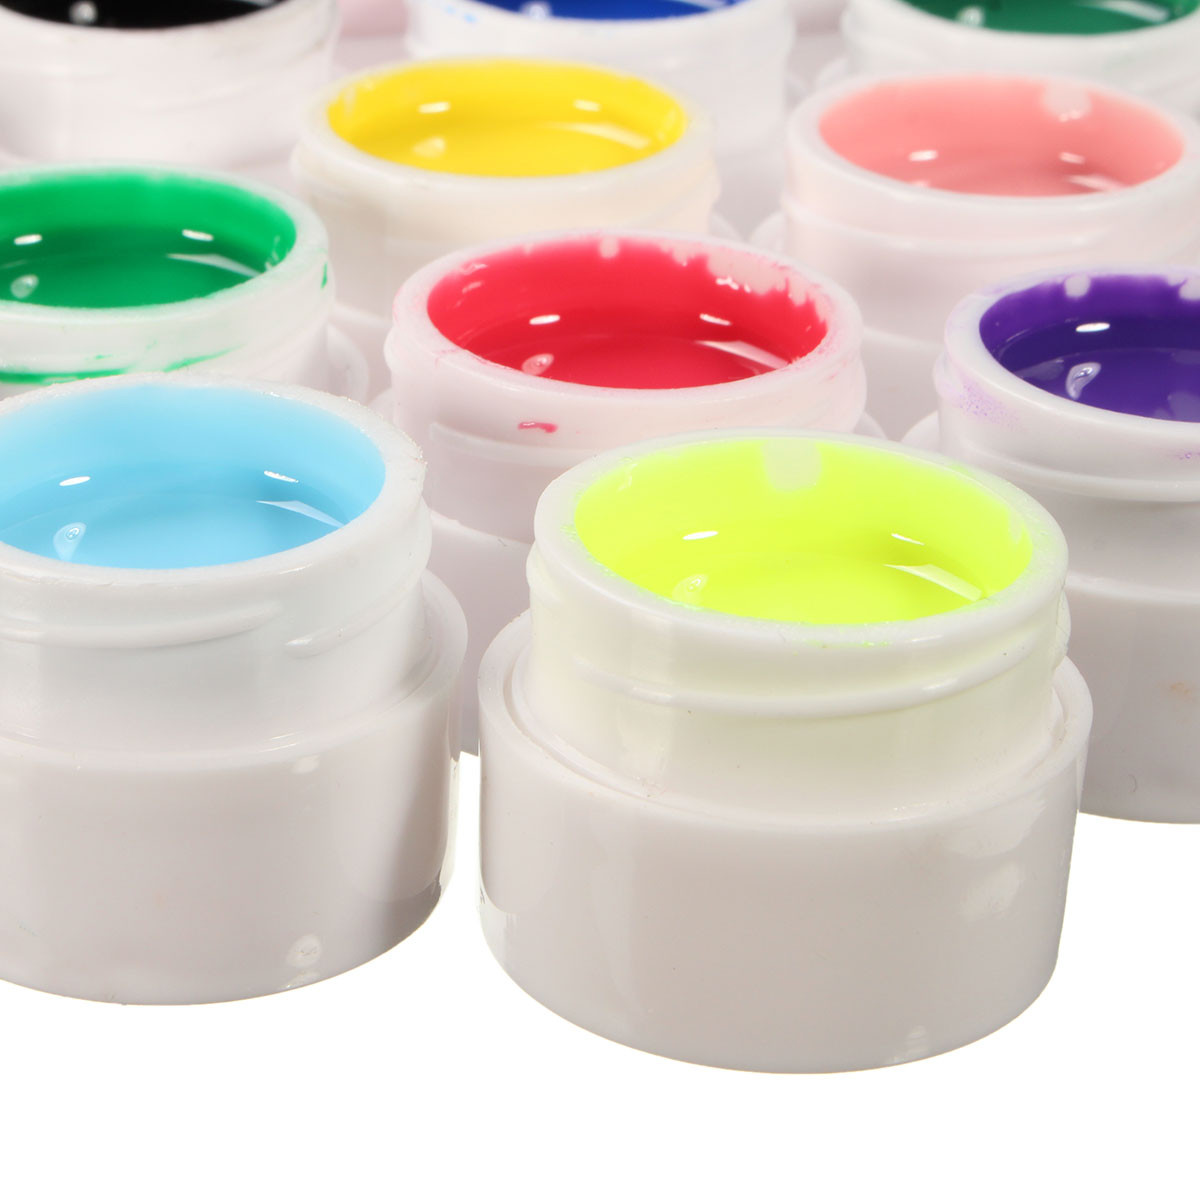 24-Colors-Pure-Manicure-Nail-Art-UV-Gel-Builder-Manicure-Decoration-Set-1037222